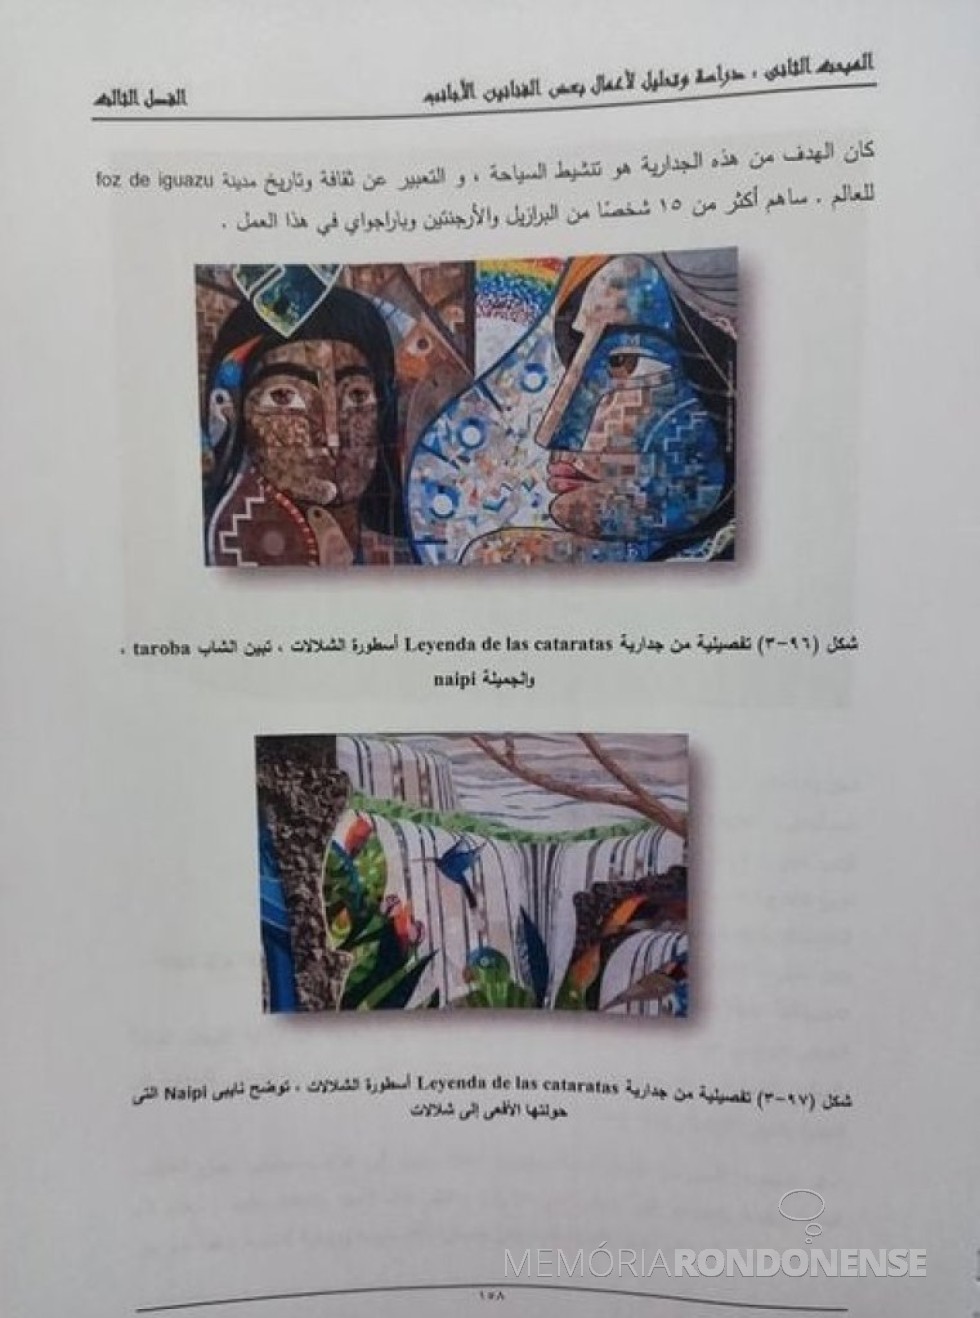 || Painel de avaliação da arte de Michel Hachen, no Egito.
Imagem: Acervo do artista - FOTO 18 - 